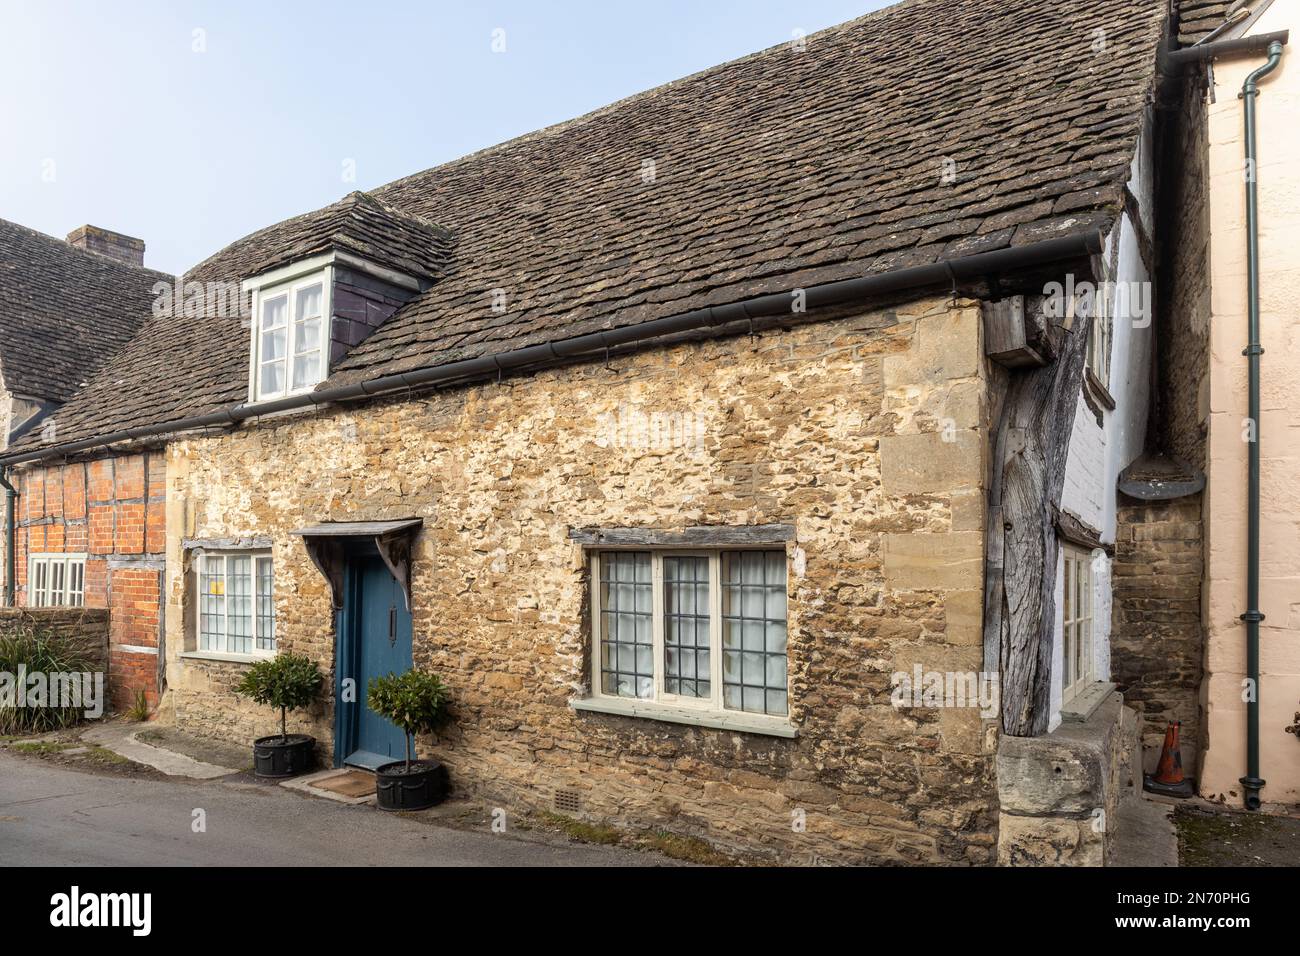 Grazioso vecchio cottage tradizionale in pietra nel villaggio inglese di Lacock, Wiltshire, Inghilterra, Regno Unito Foto Stock